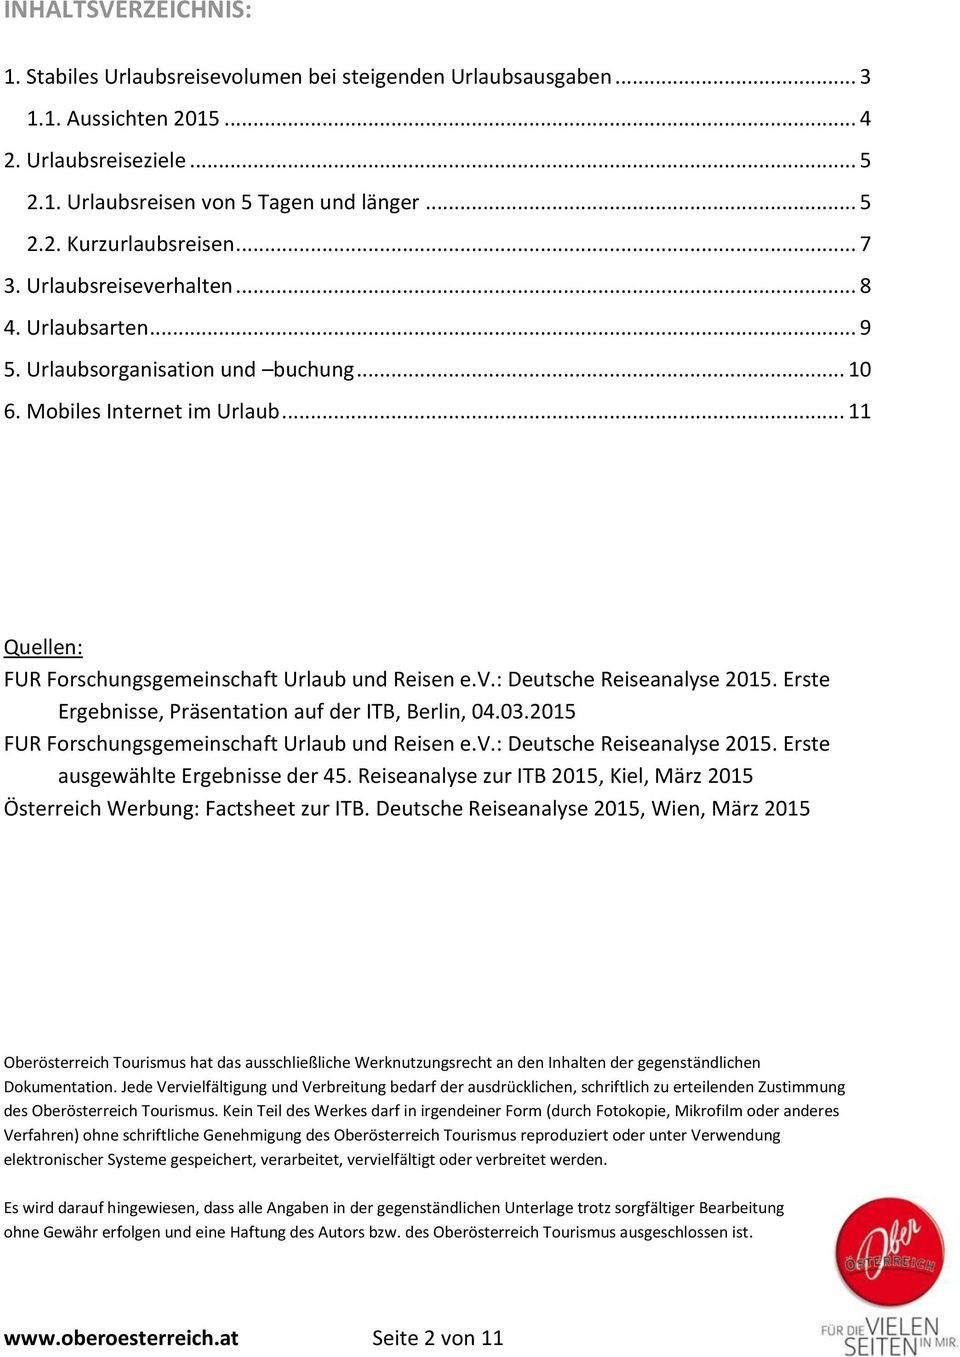 Erste Ergebnisse, Präsentation auf der ITB, Berlin, 04.03.2015 FUR Forschungsgemeinschaft Urlaub und Reisen e.v.: Deutsche Reiseanalyse 2015. Erste ausgewählte Ergebnisse der 45.